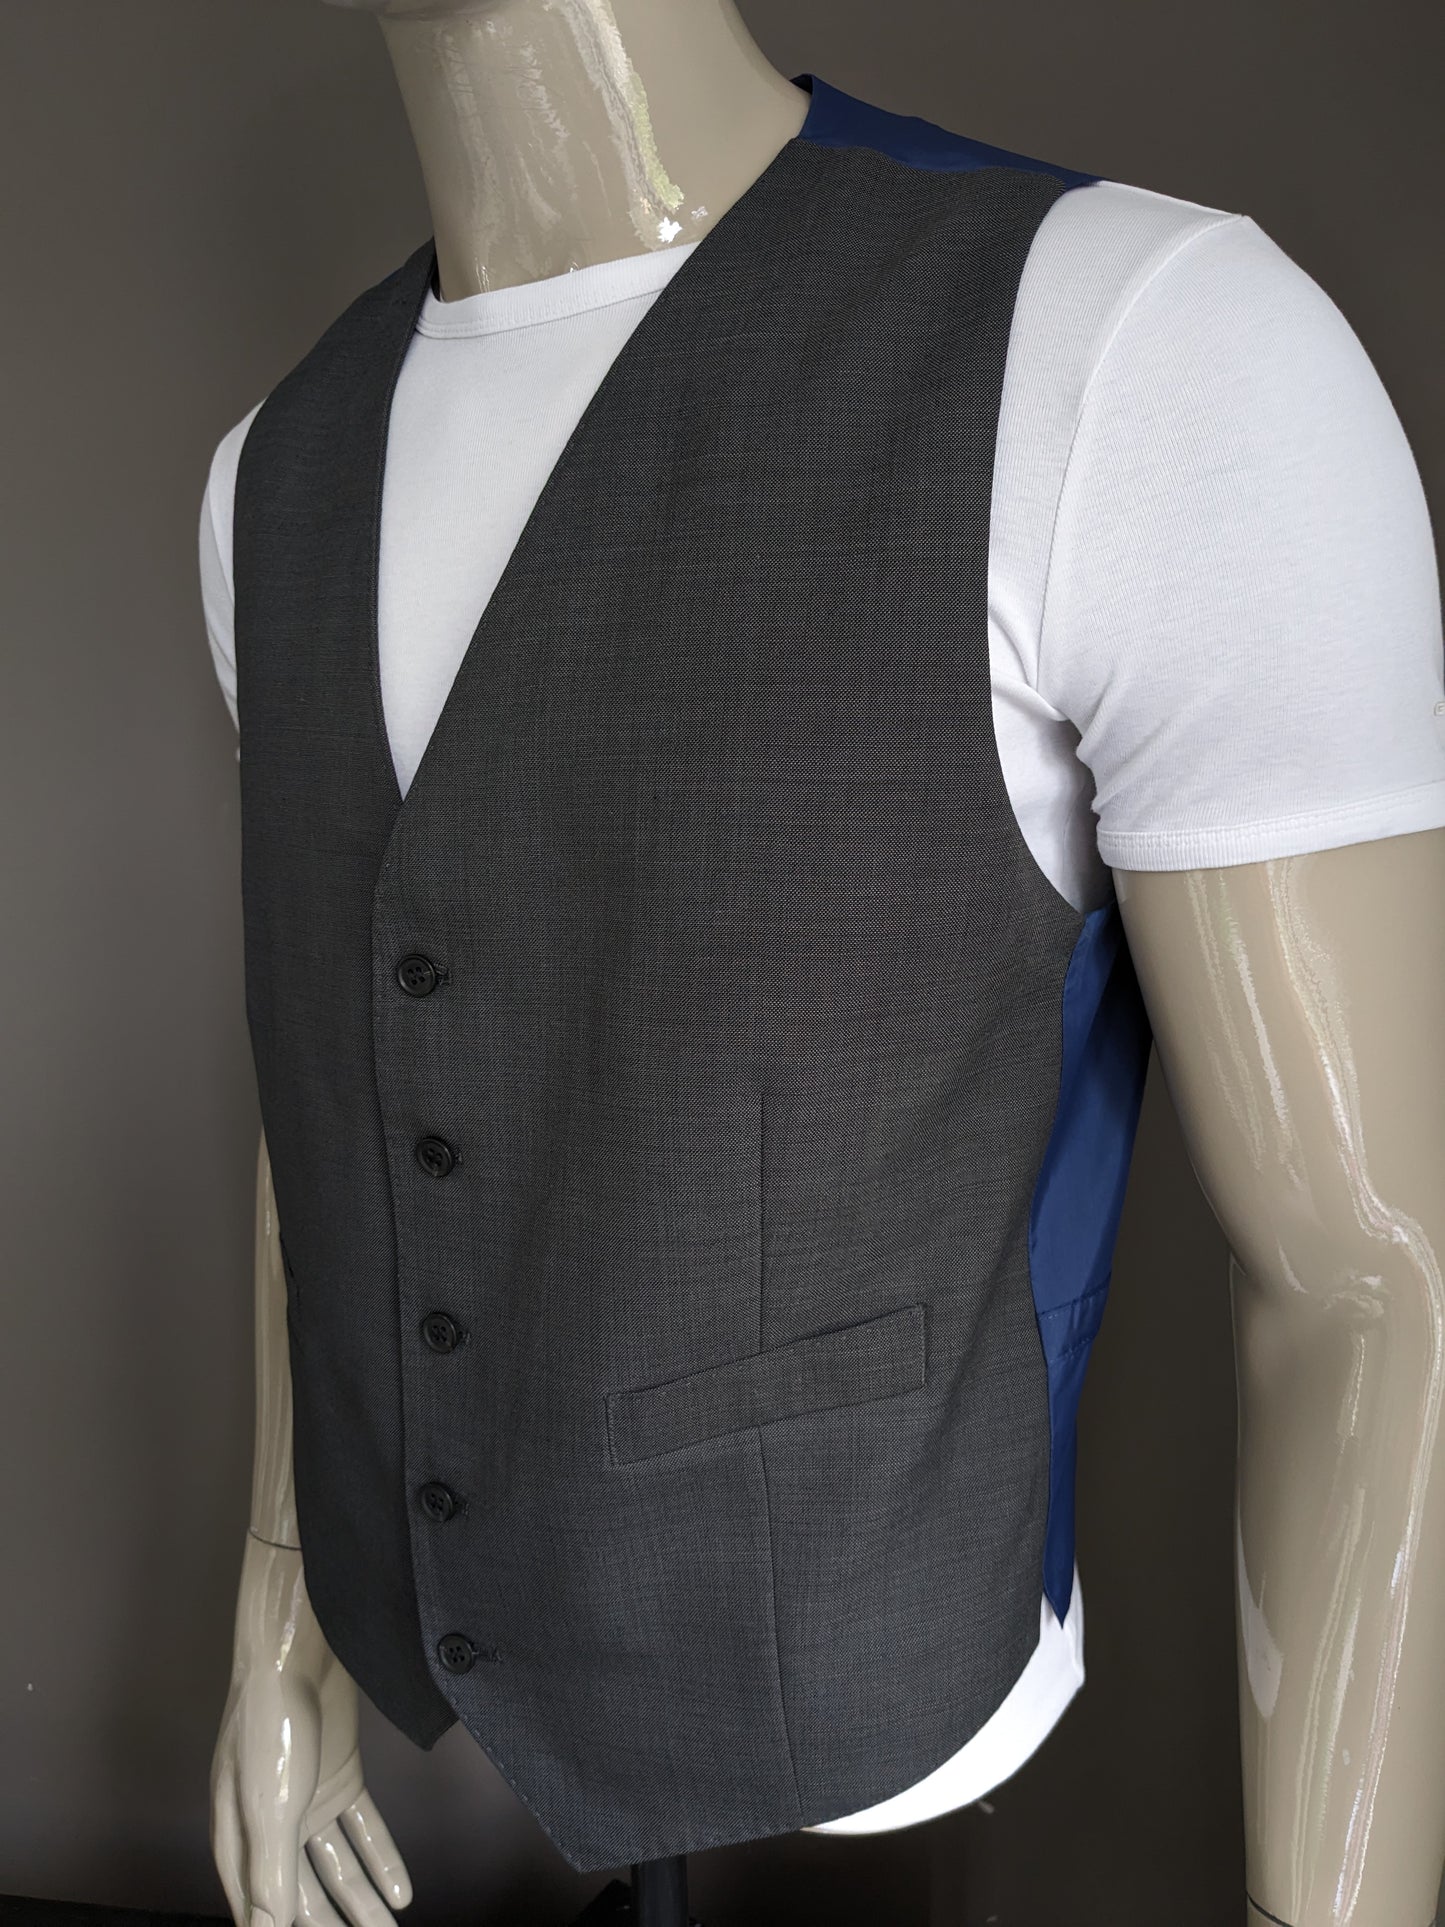 Le gilet en laine de la collection M&S. Motif gris. Coupe ajustée. Taille L. # 326